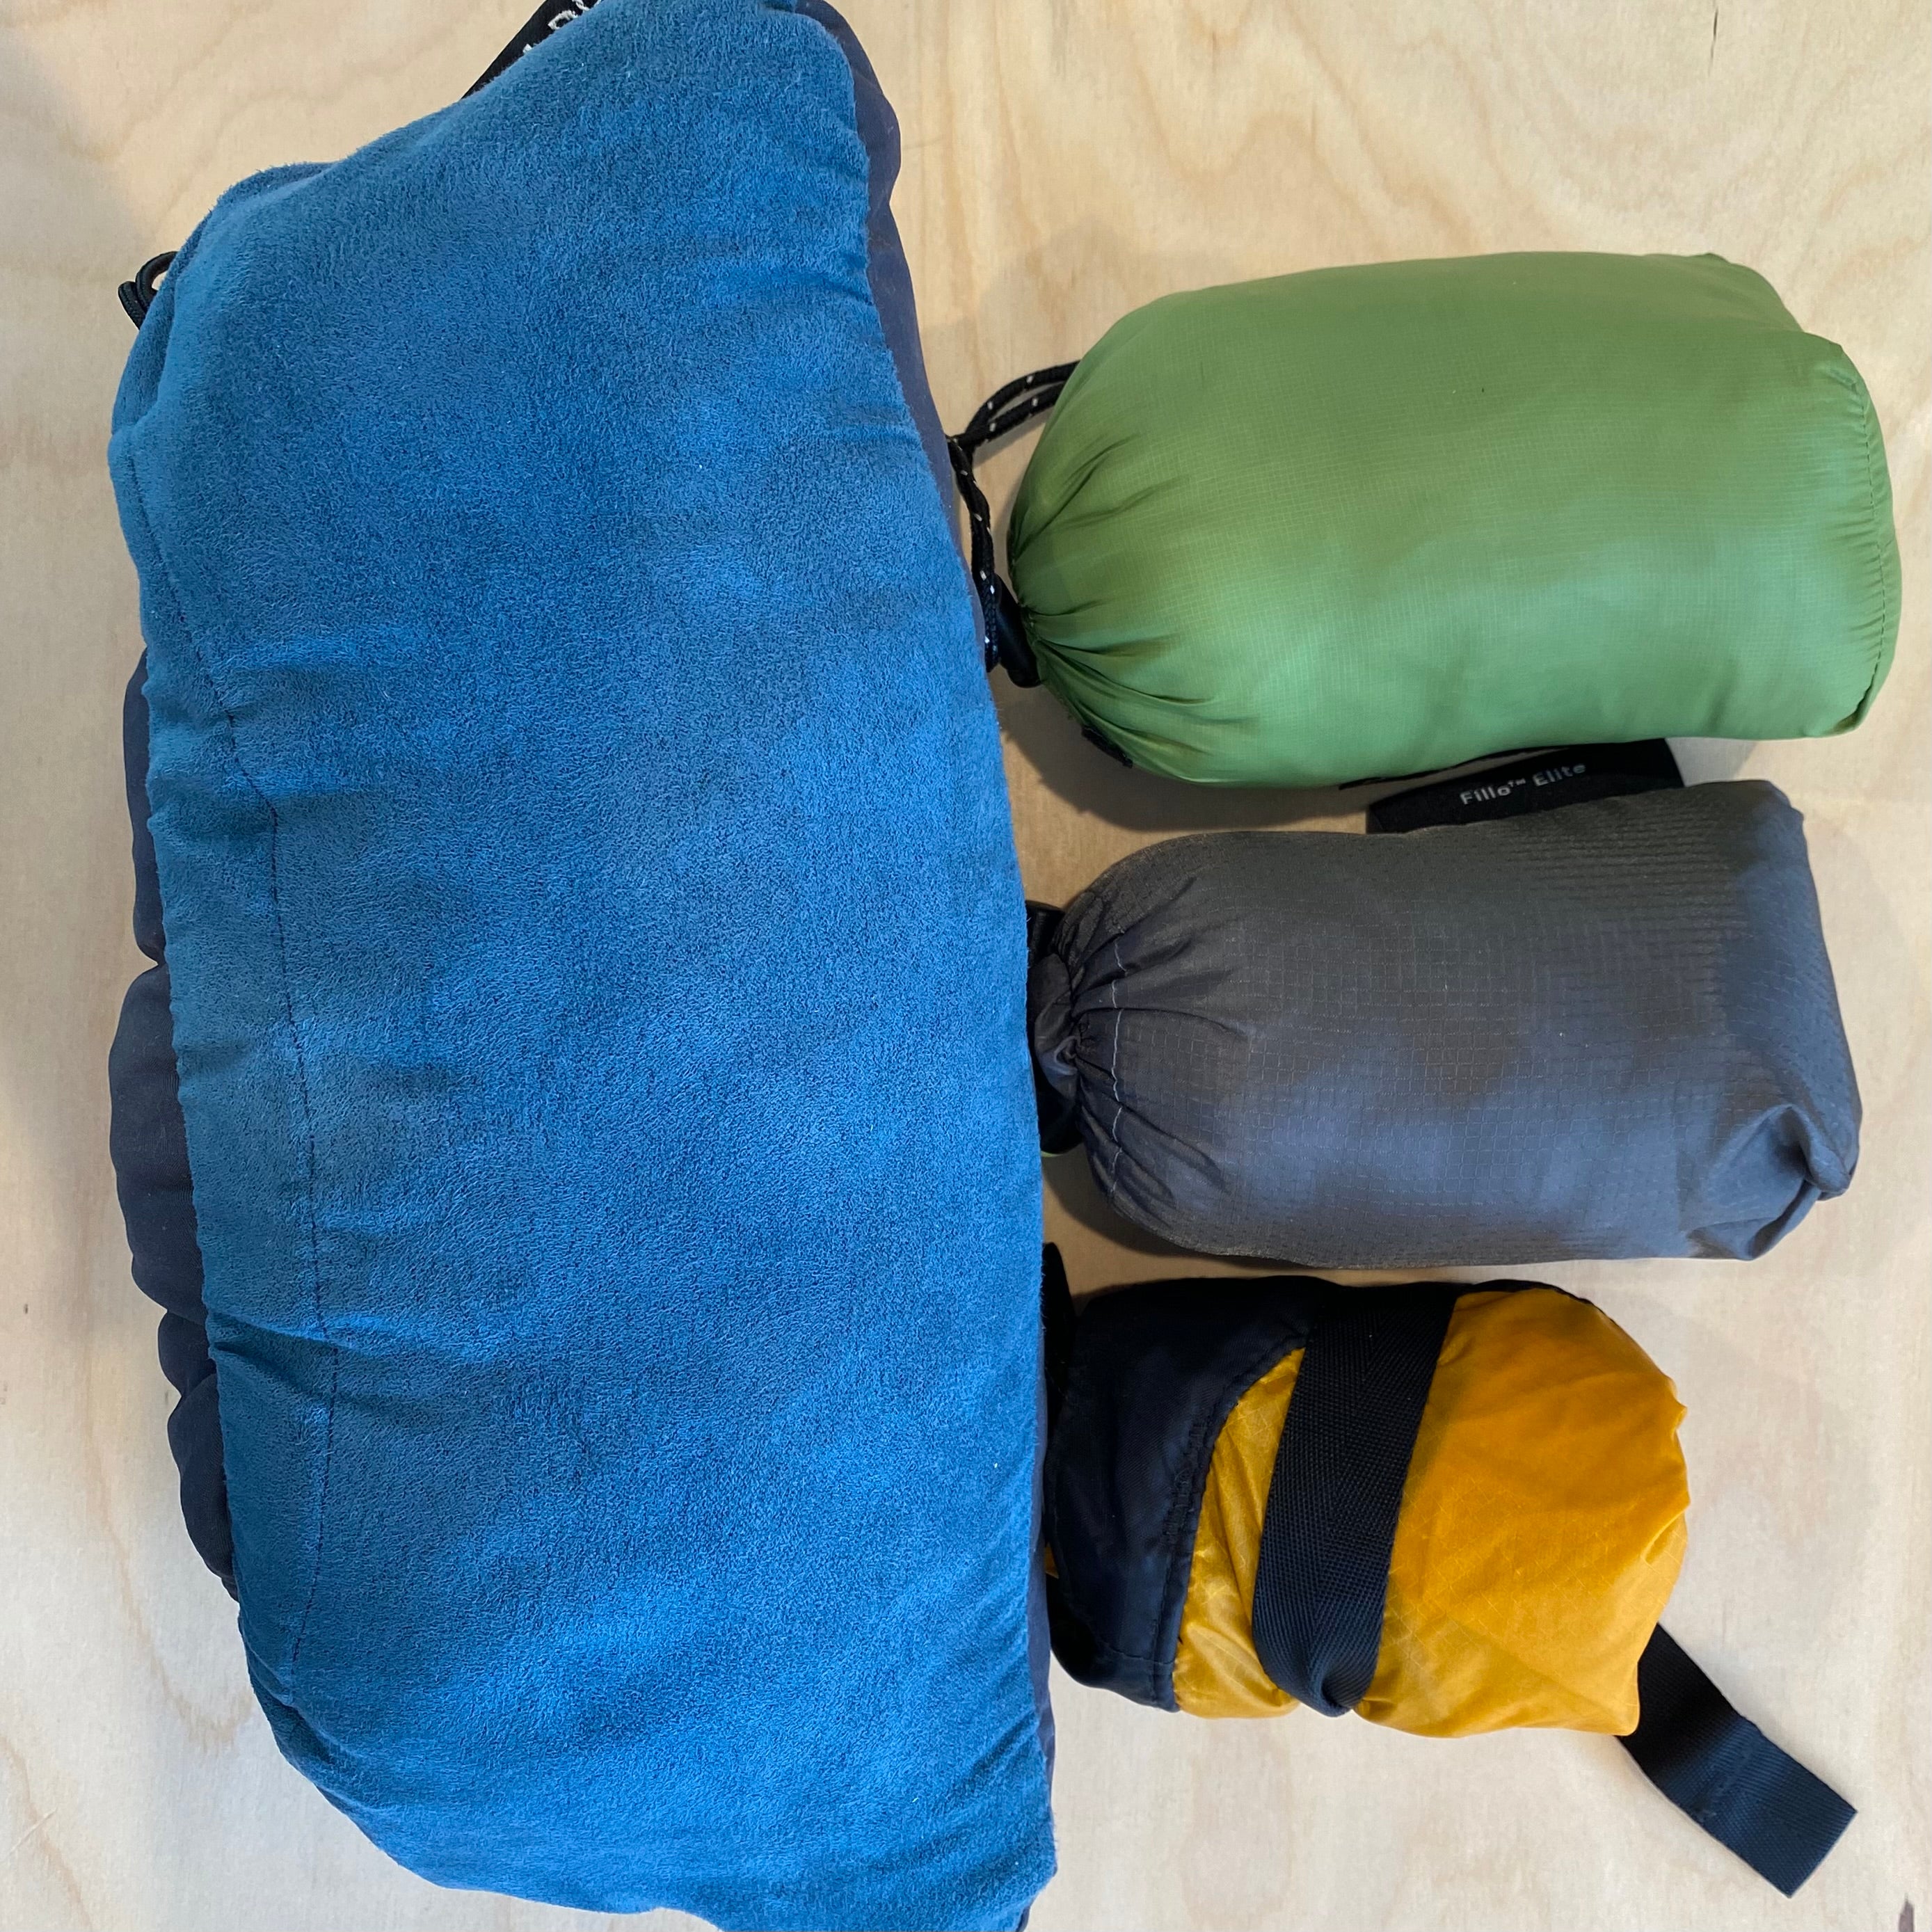 Sleep Comfort for Plus Size Backpackers